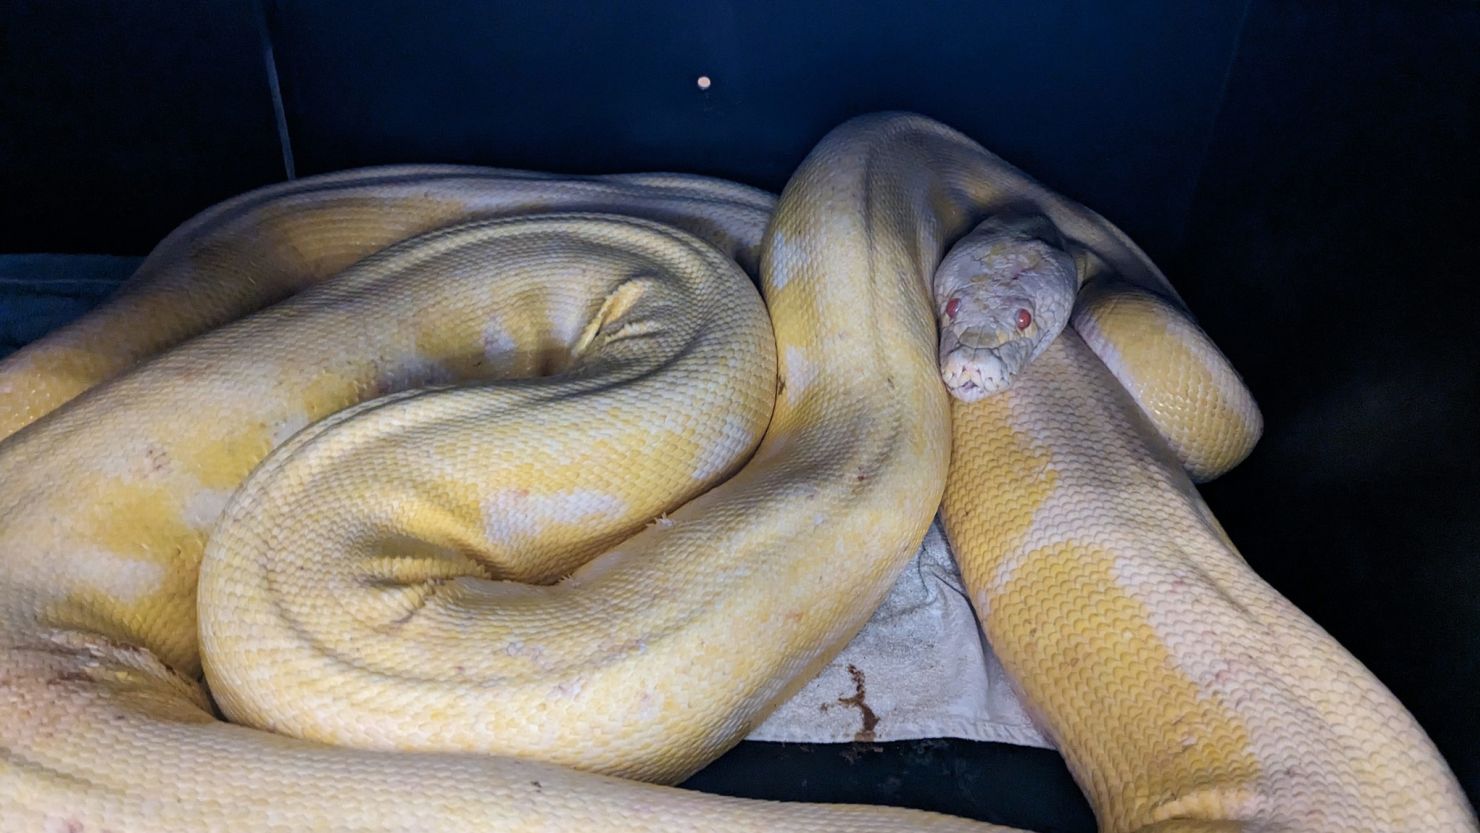 Massive albino boa constrictor discovered in Florida backyard